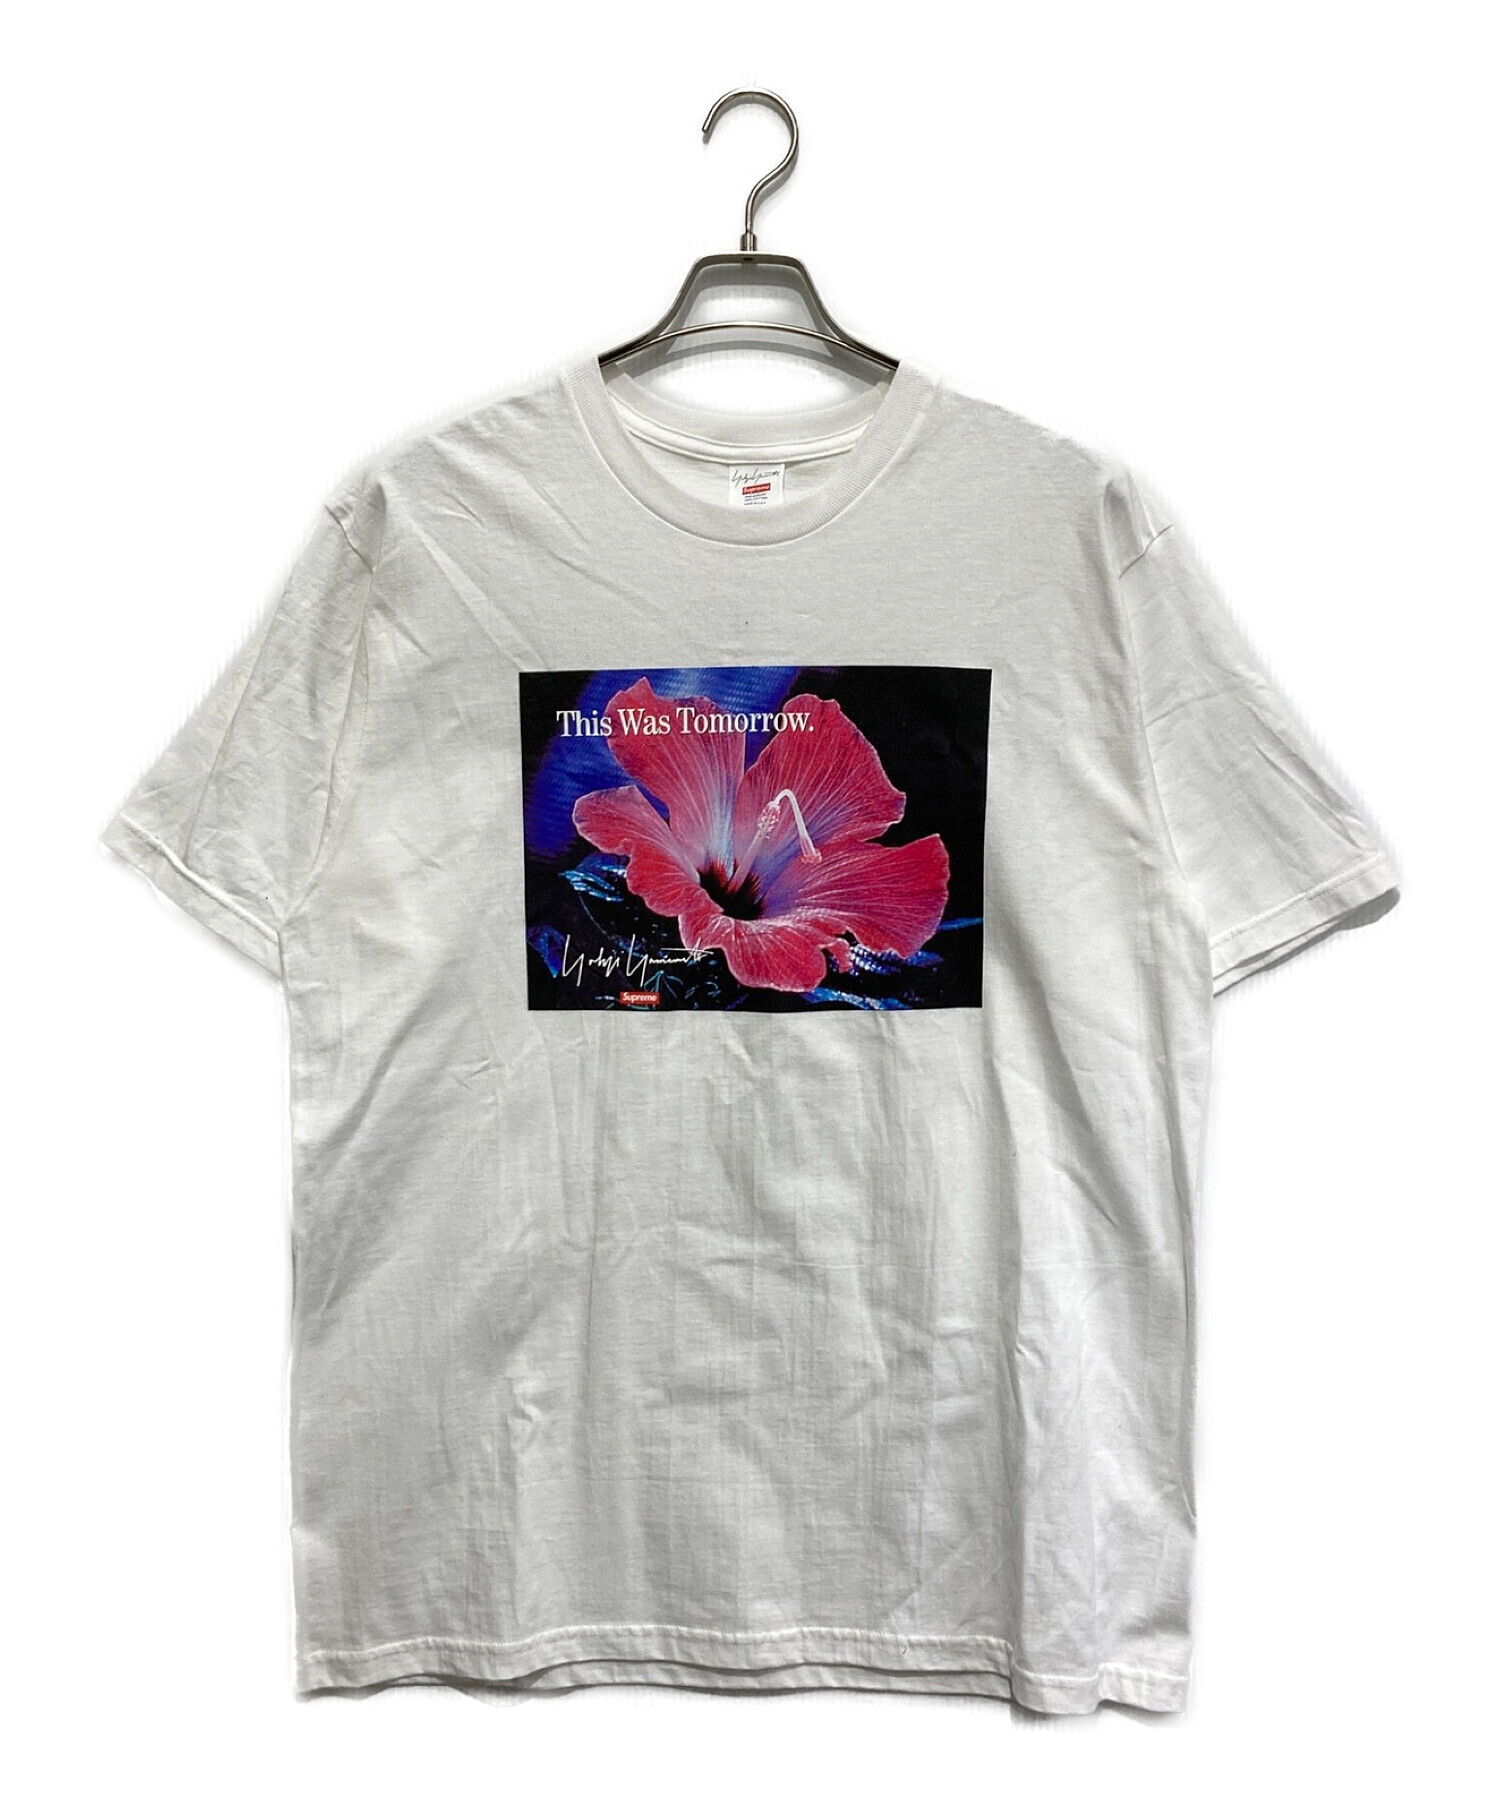 SUPREME (シュプリーム) YOHJI YAMAMOTO (ヨウジヤマモト) This Was Tomorrow Tシャツ ホワイト  サイズ:SIZE L 未使用品